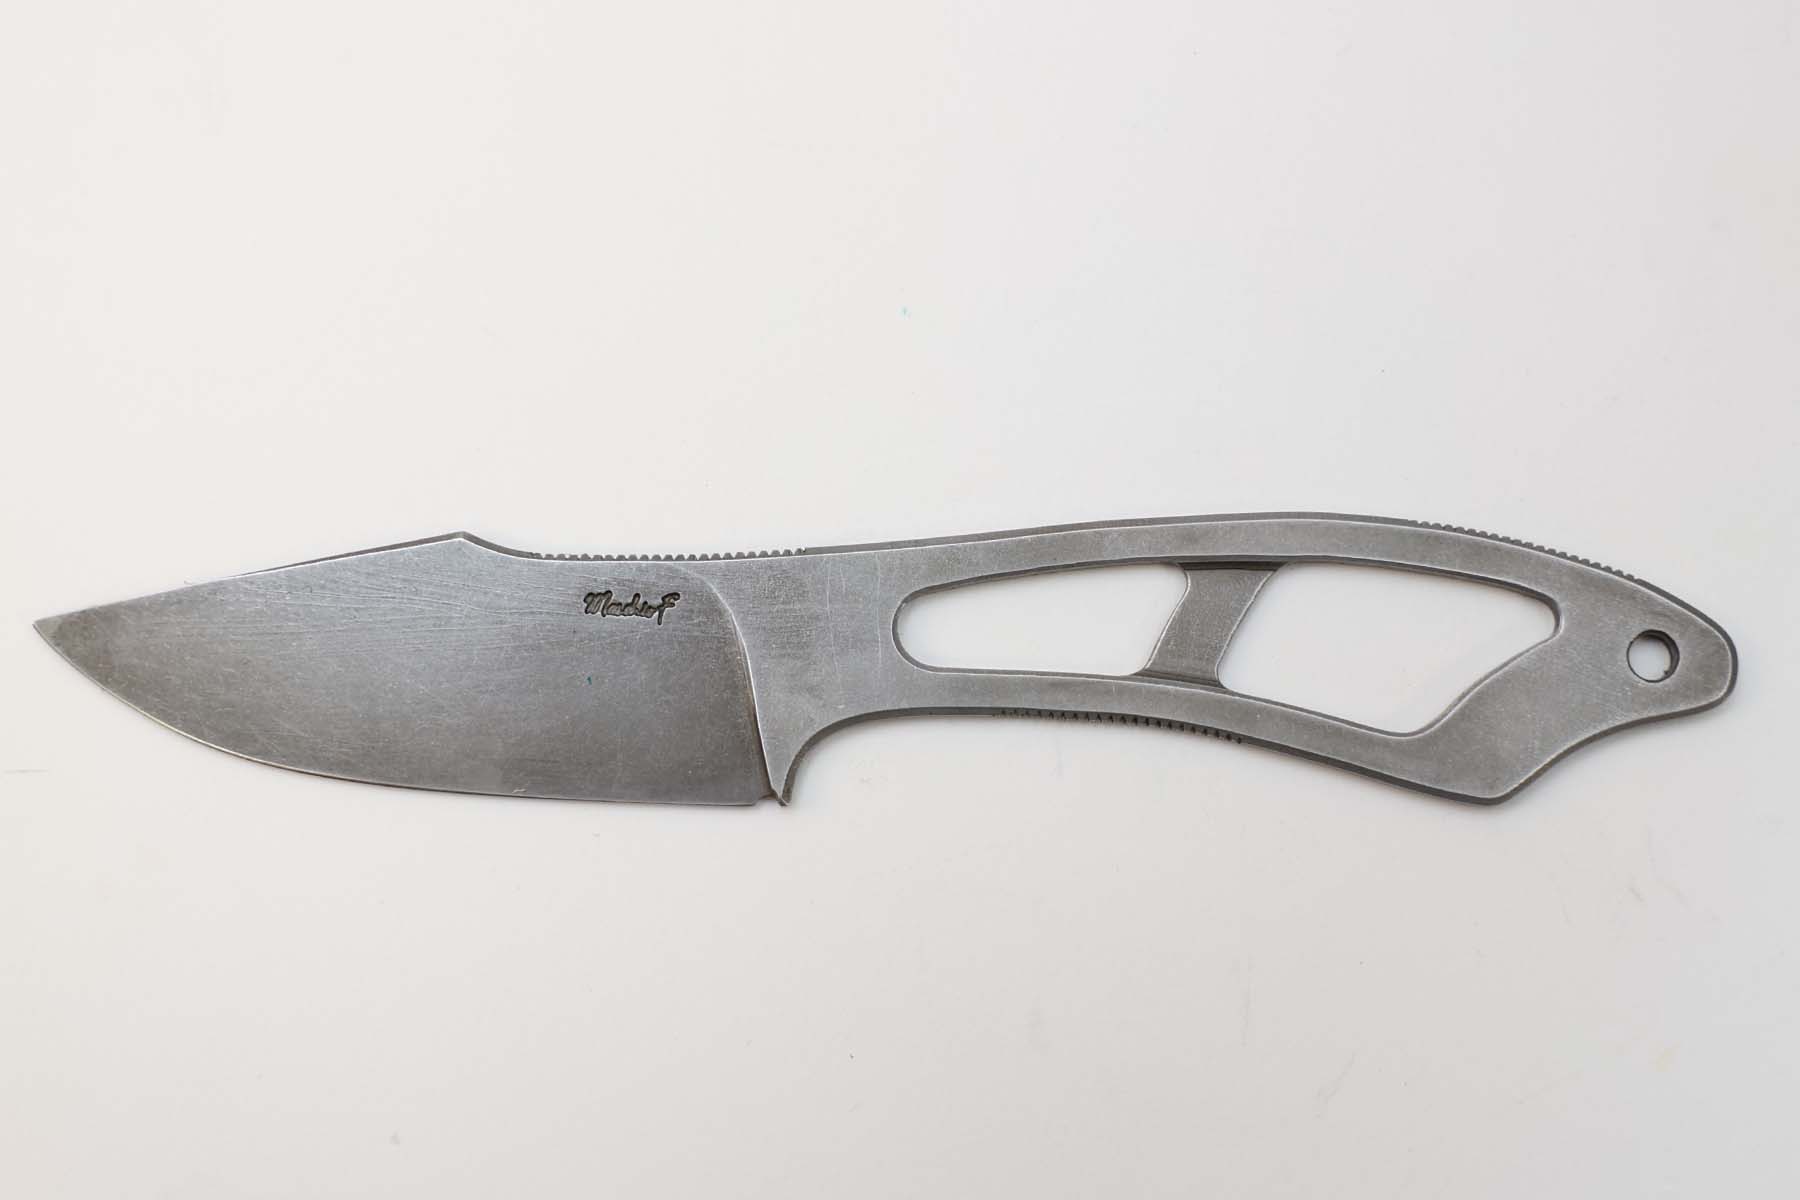 Couteau fixe artisanal de Fréderic Maschio modèle Squelette